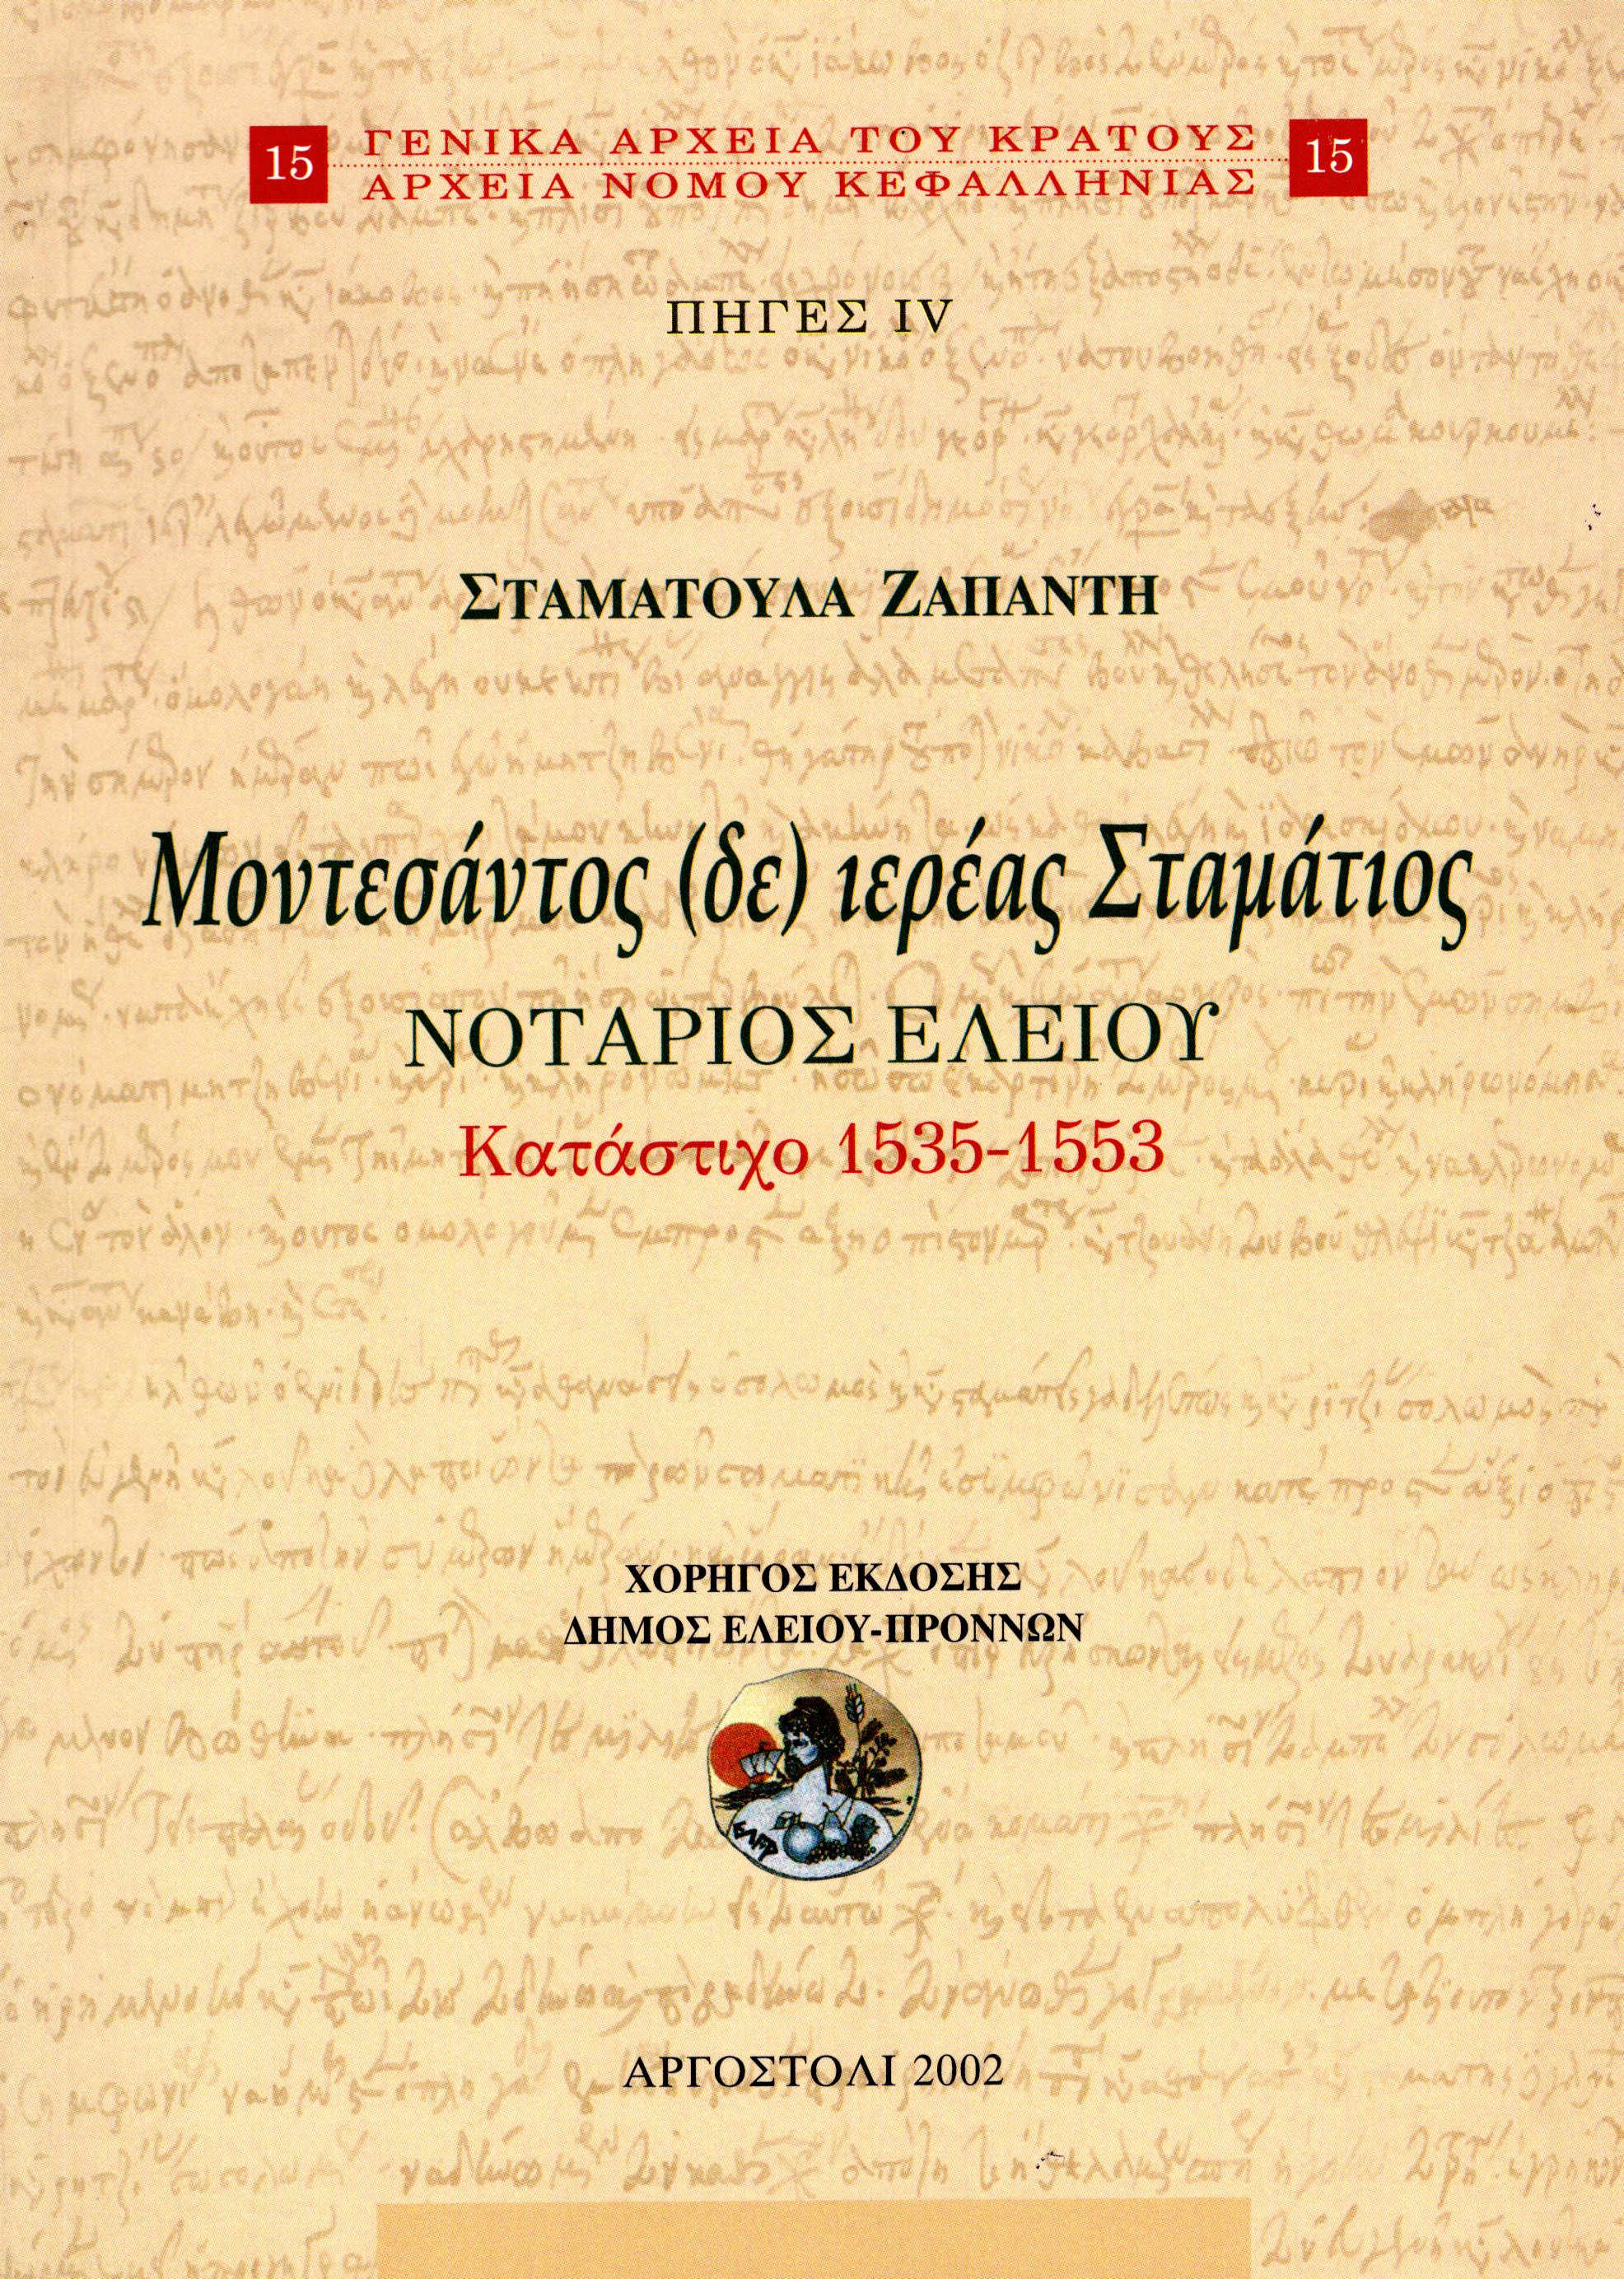 Εξώφυλλο από ΜΟΝΤΕΣΑΝΤΟΣ (ΔΕ) ΙΕΡΕΑΣ ΣΤΑΜΑΤΙΟΣ, ΝΟΤΑΡΙΟΣ ΕΛΕΙΟΥ. ΚΑΤΑΣΤΙΧΟ 1535-1553, ΠΗΓΕΣ IV